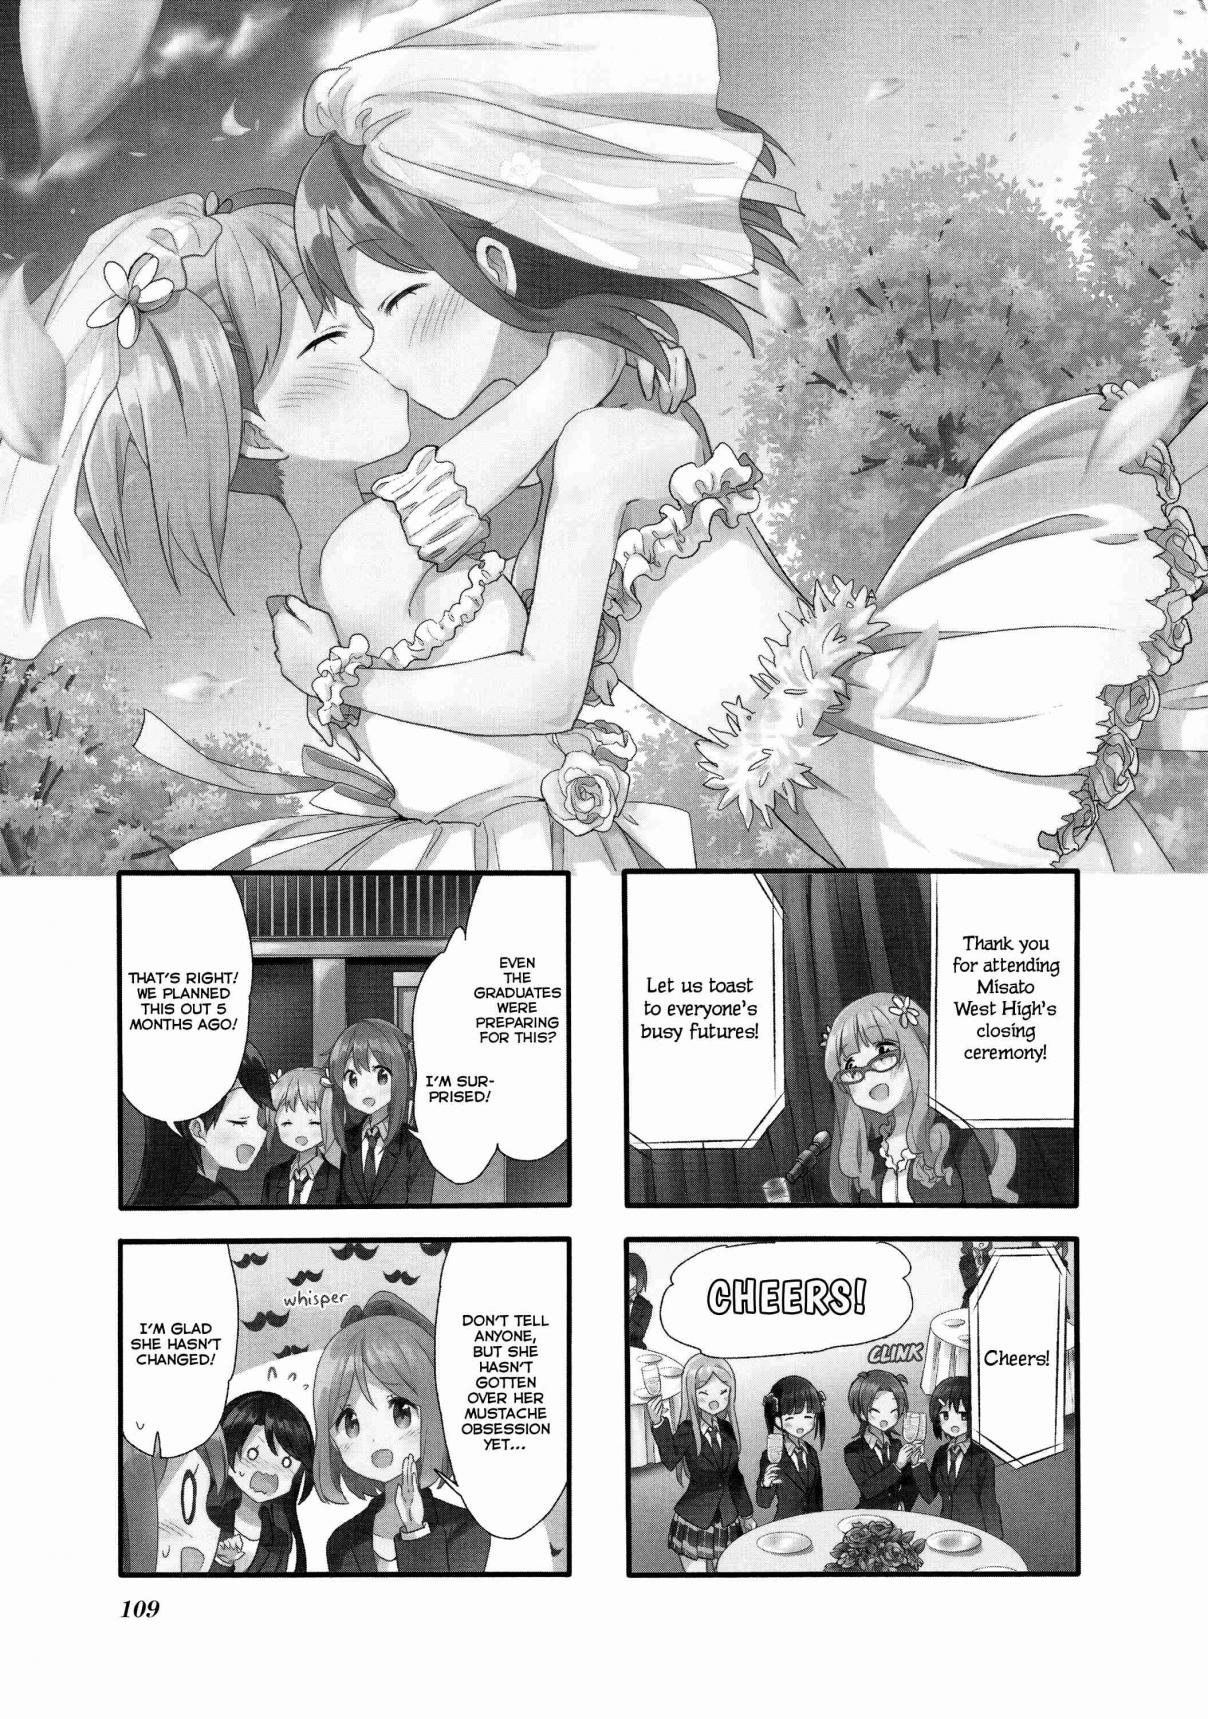 Sakura Trick Vol. 8 Ch. 76 Final Chapter